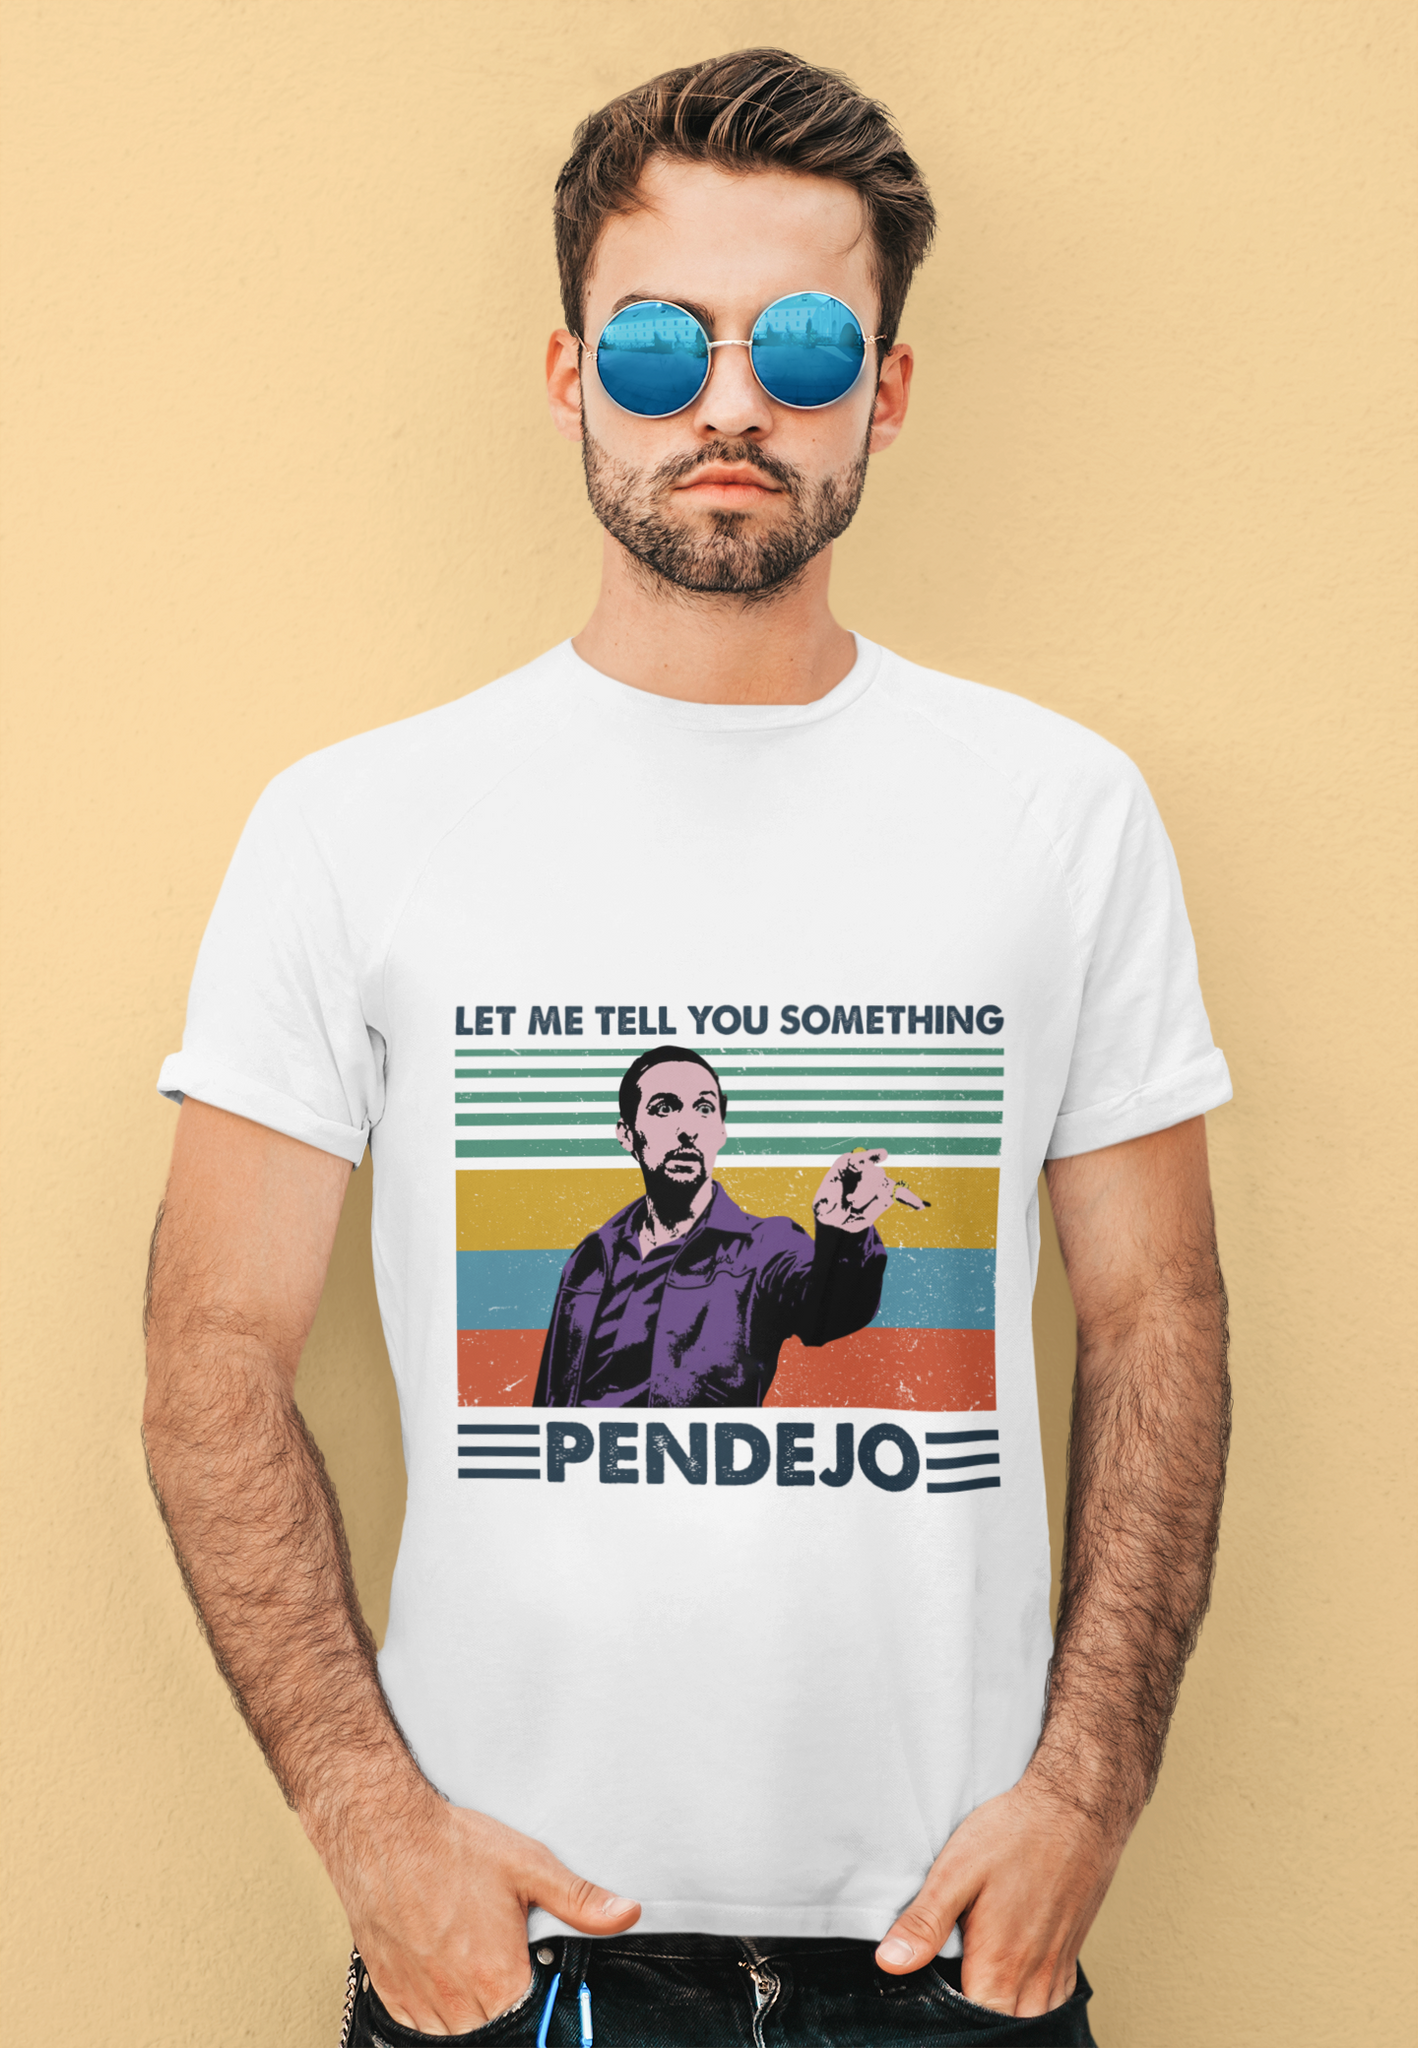 The Big Lebowski T Shirt, Jesus Quintana Tshirt, Let Me Tell You Something Pendejo T shirt